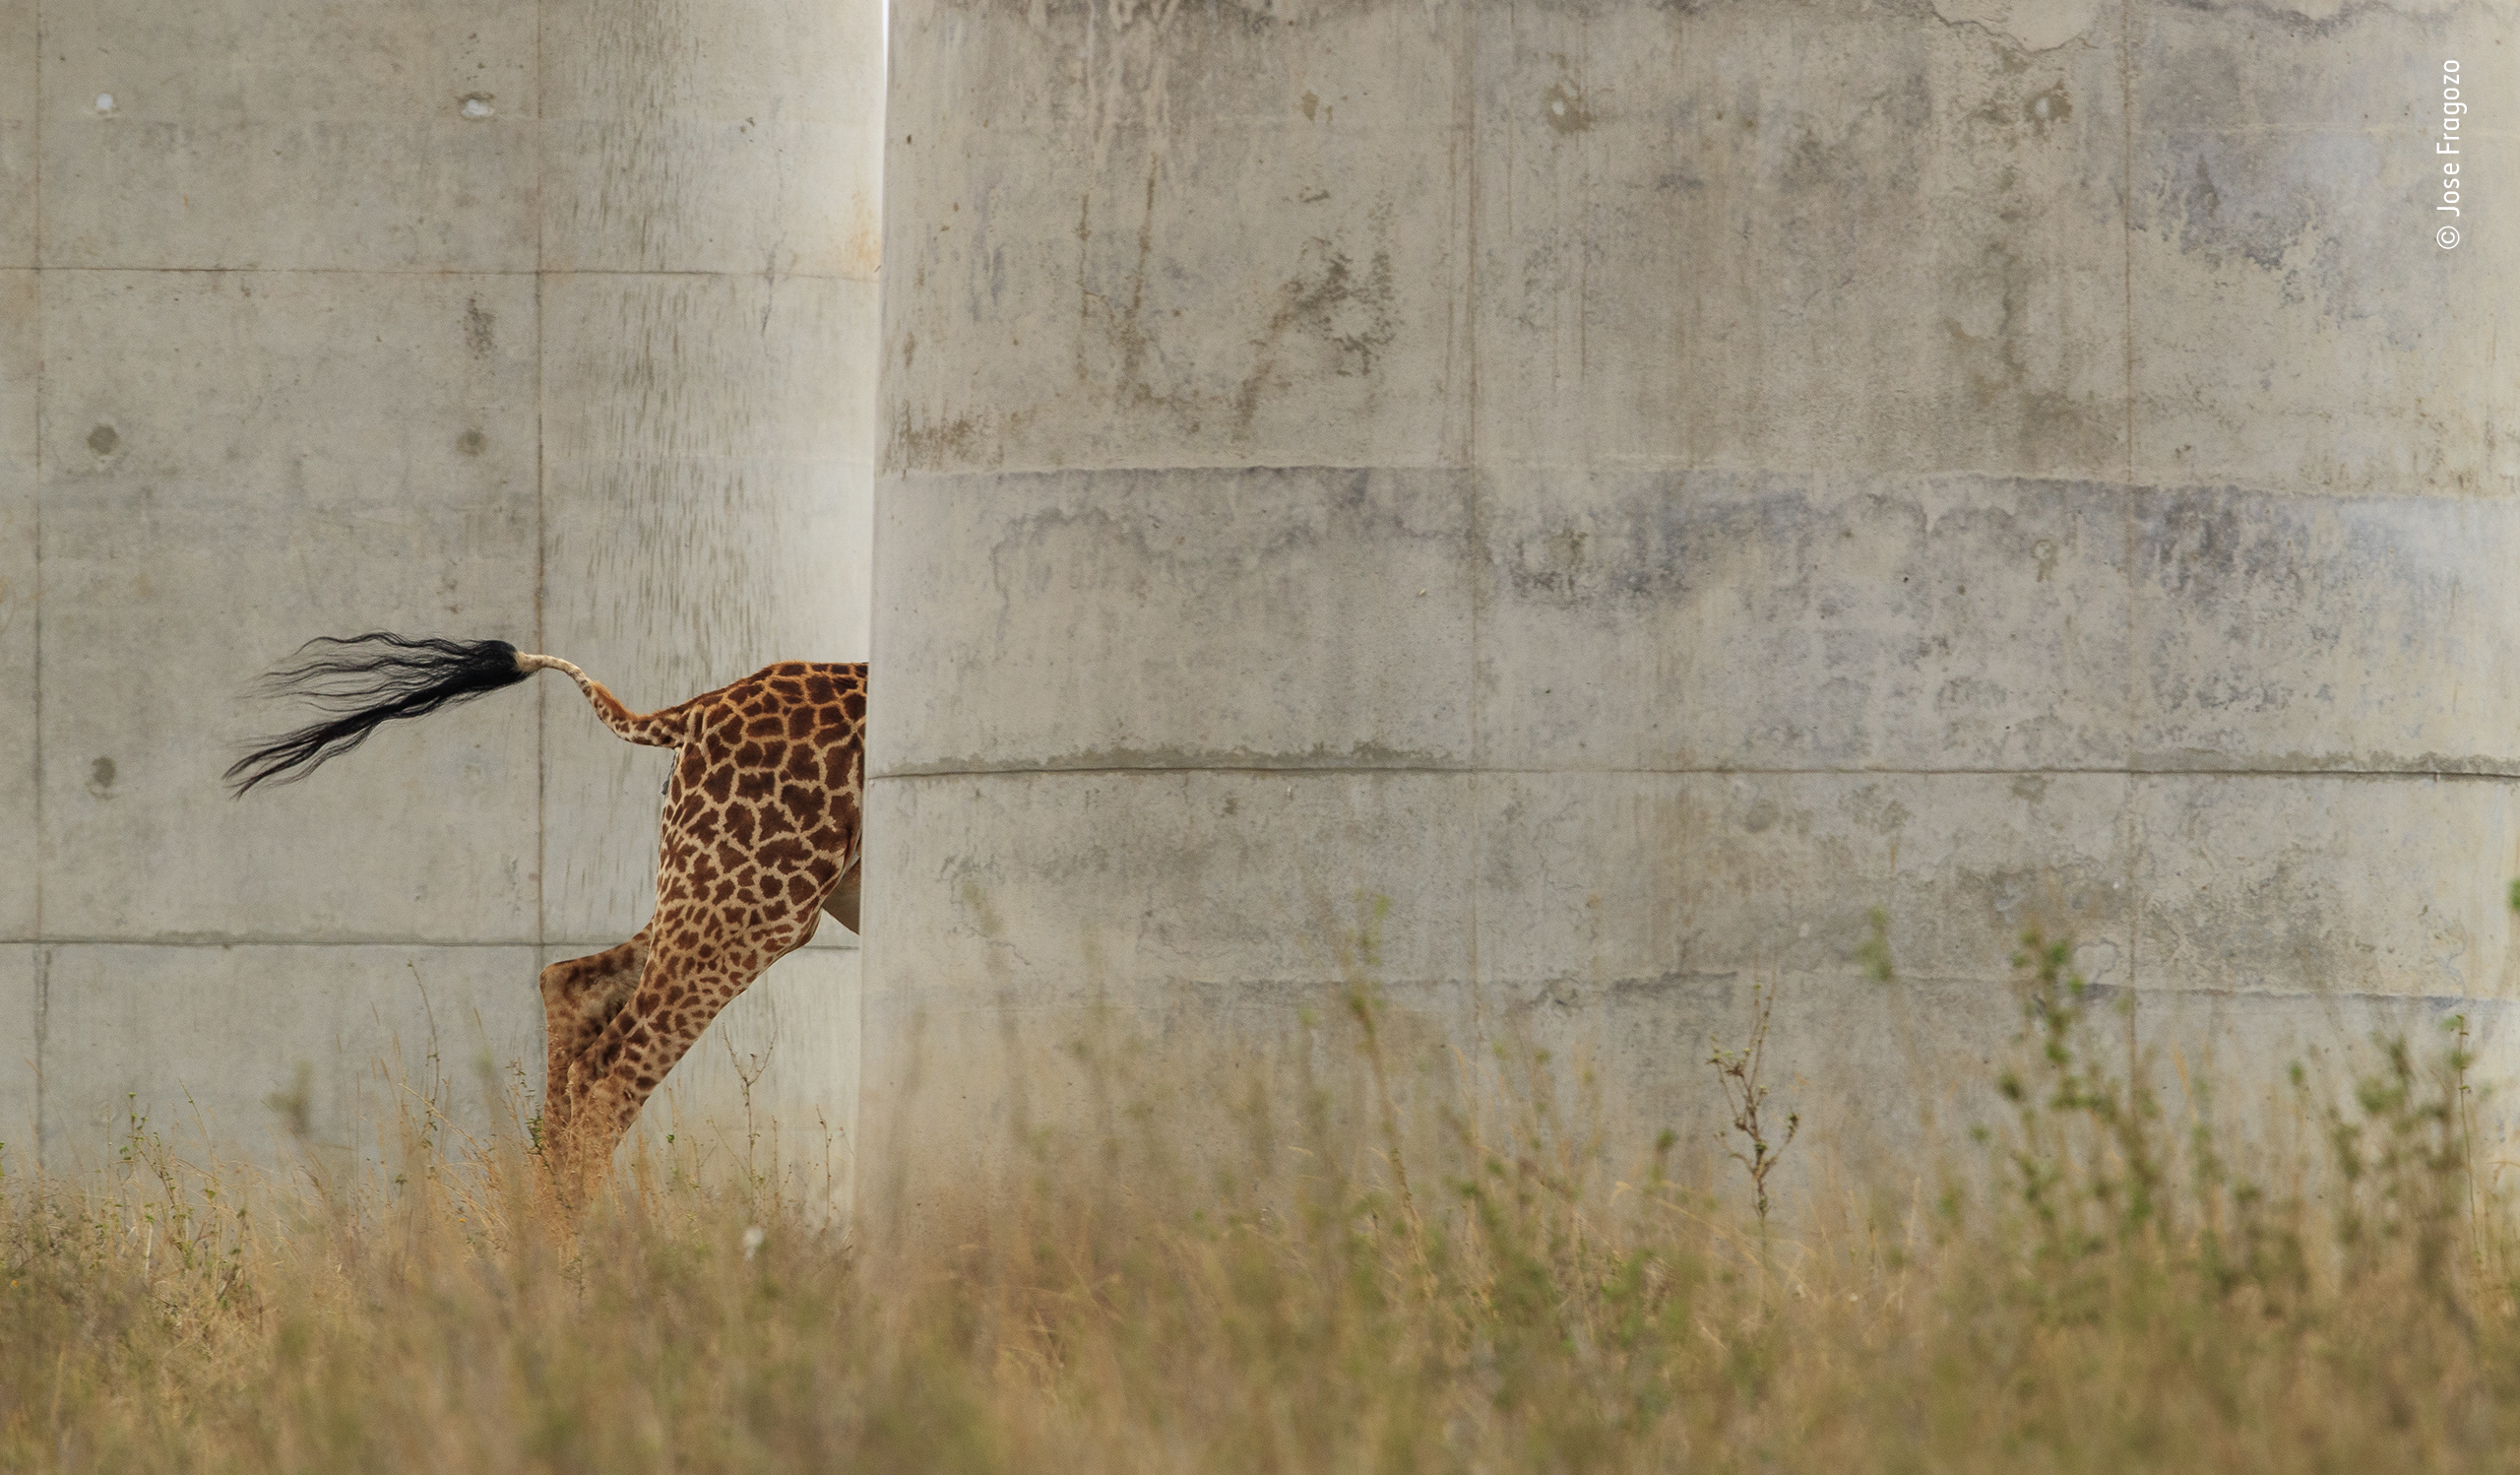 Running Giraffe © Jose Fragozo, Wildlife Photographer of the Year